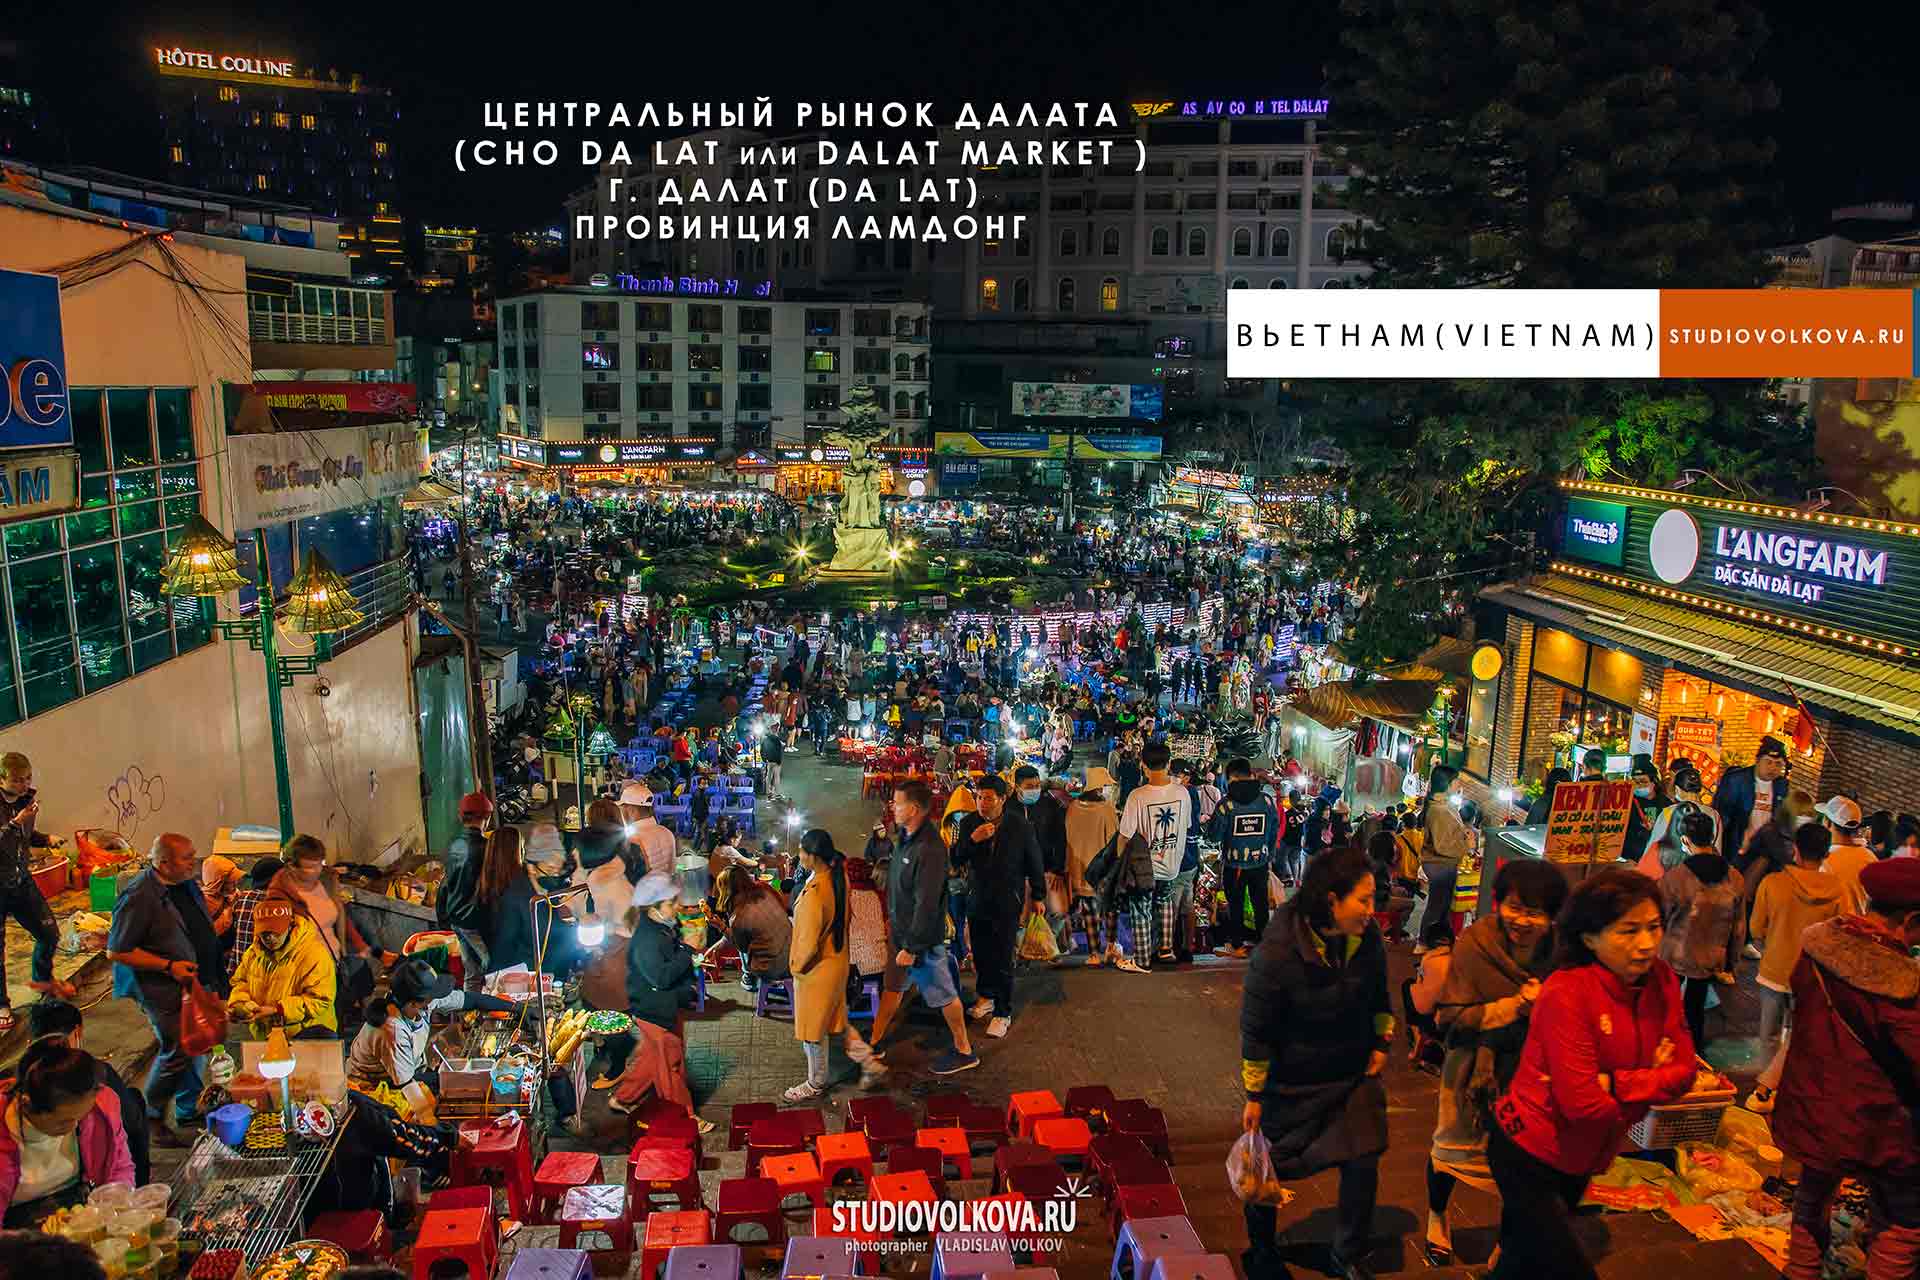 Центральный рынок Далата (Cho Da Lat или Dalat Market). г. Далат. фотограф Владислав ВОЛКОВ